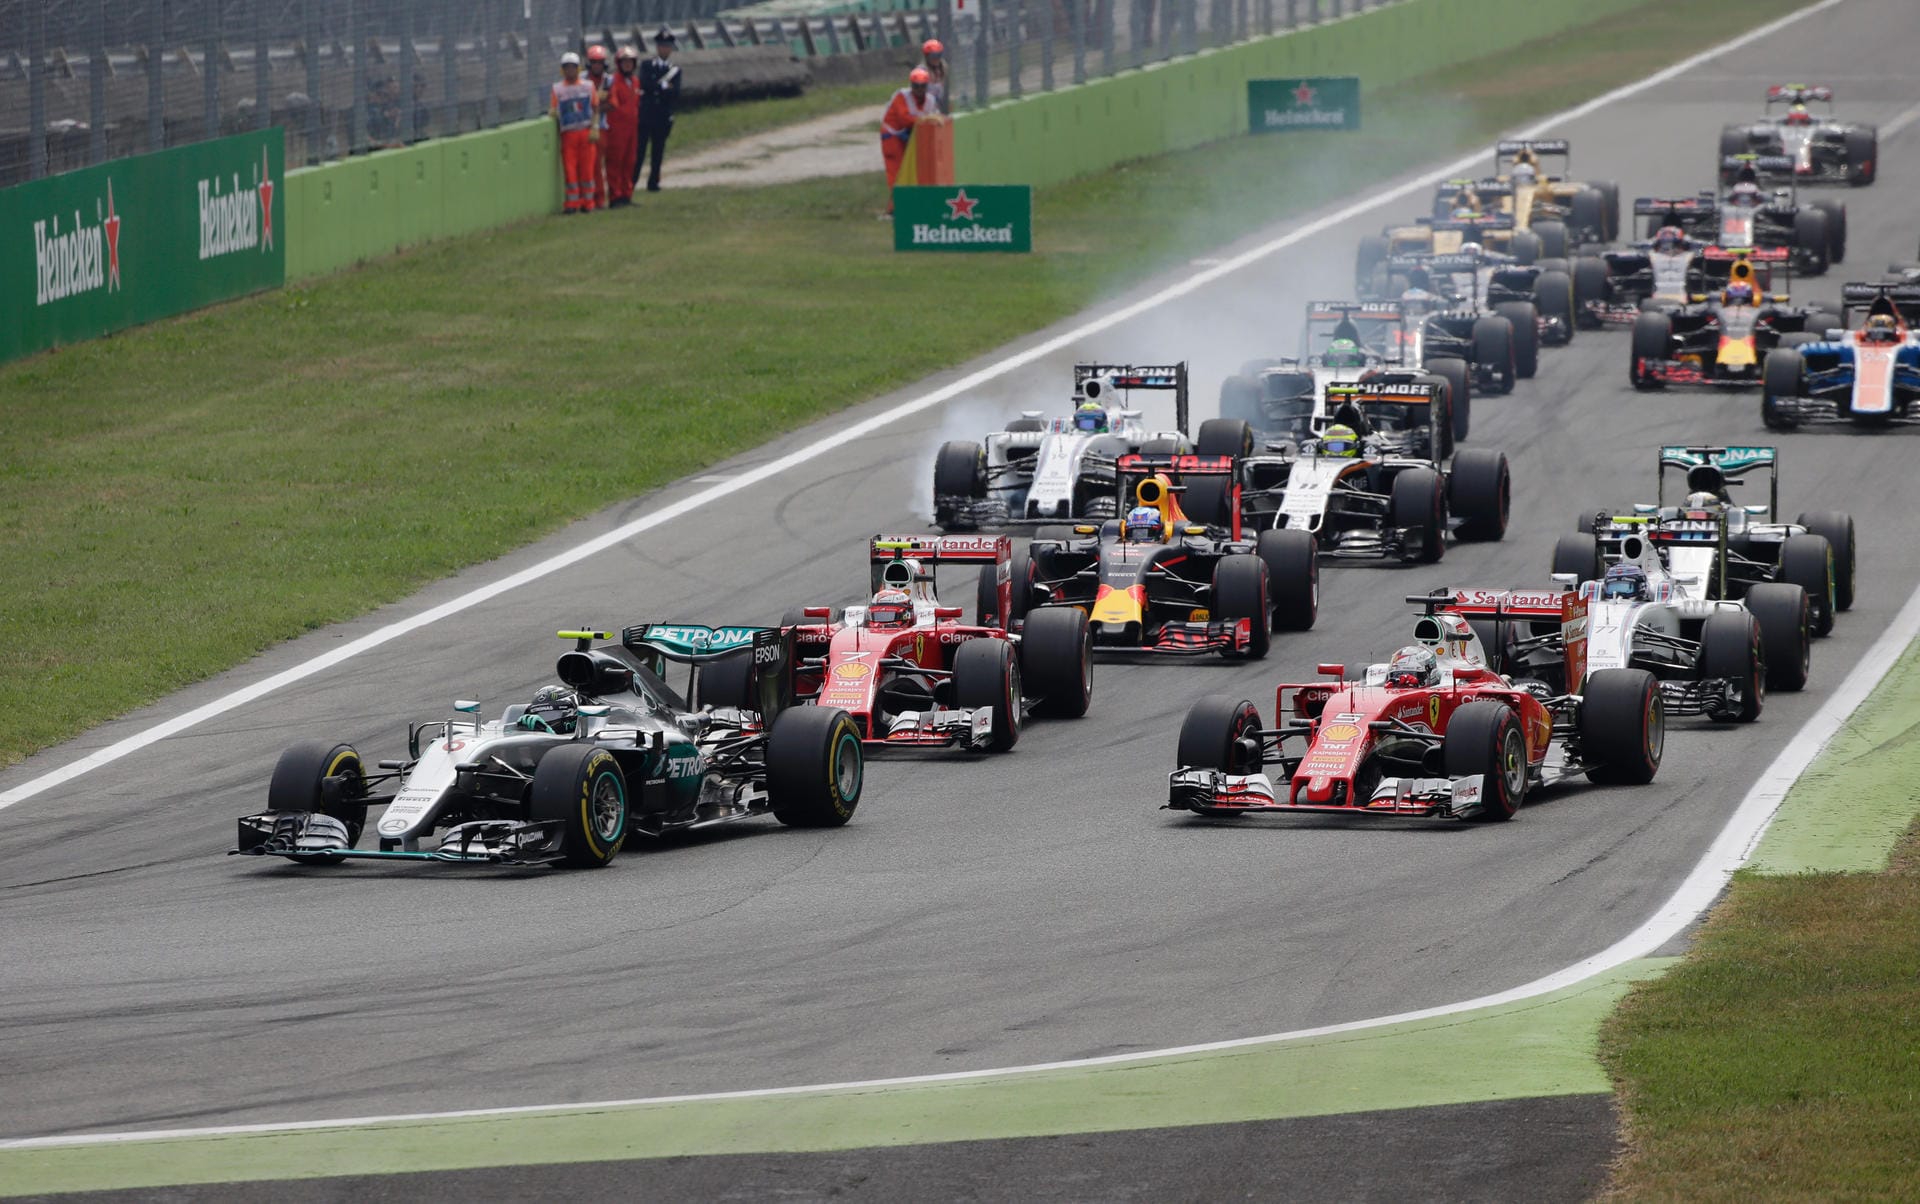 Los geht's: Das Fahrerfeld, angeführt von Nico Rosberg, machte sich in Monza auf den Weg.